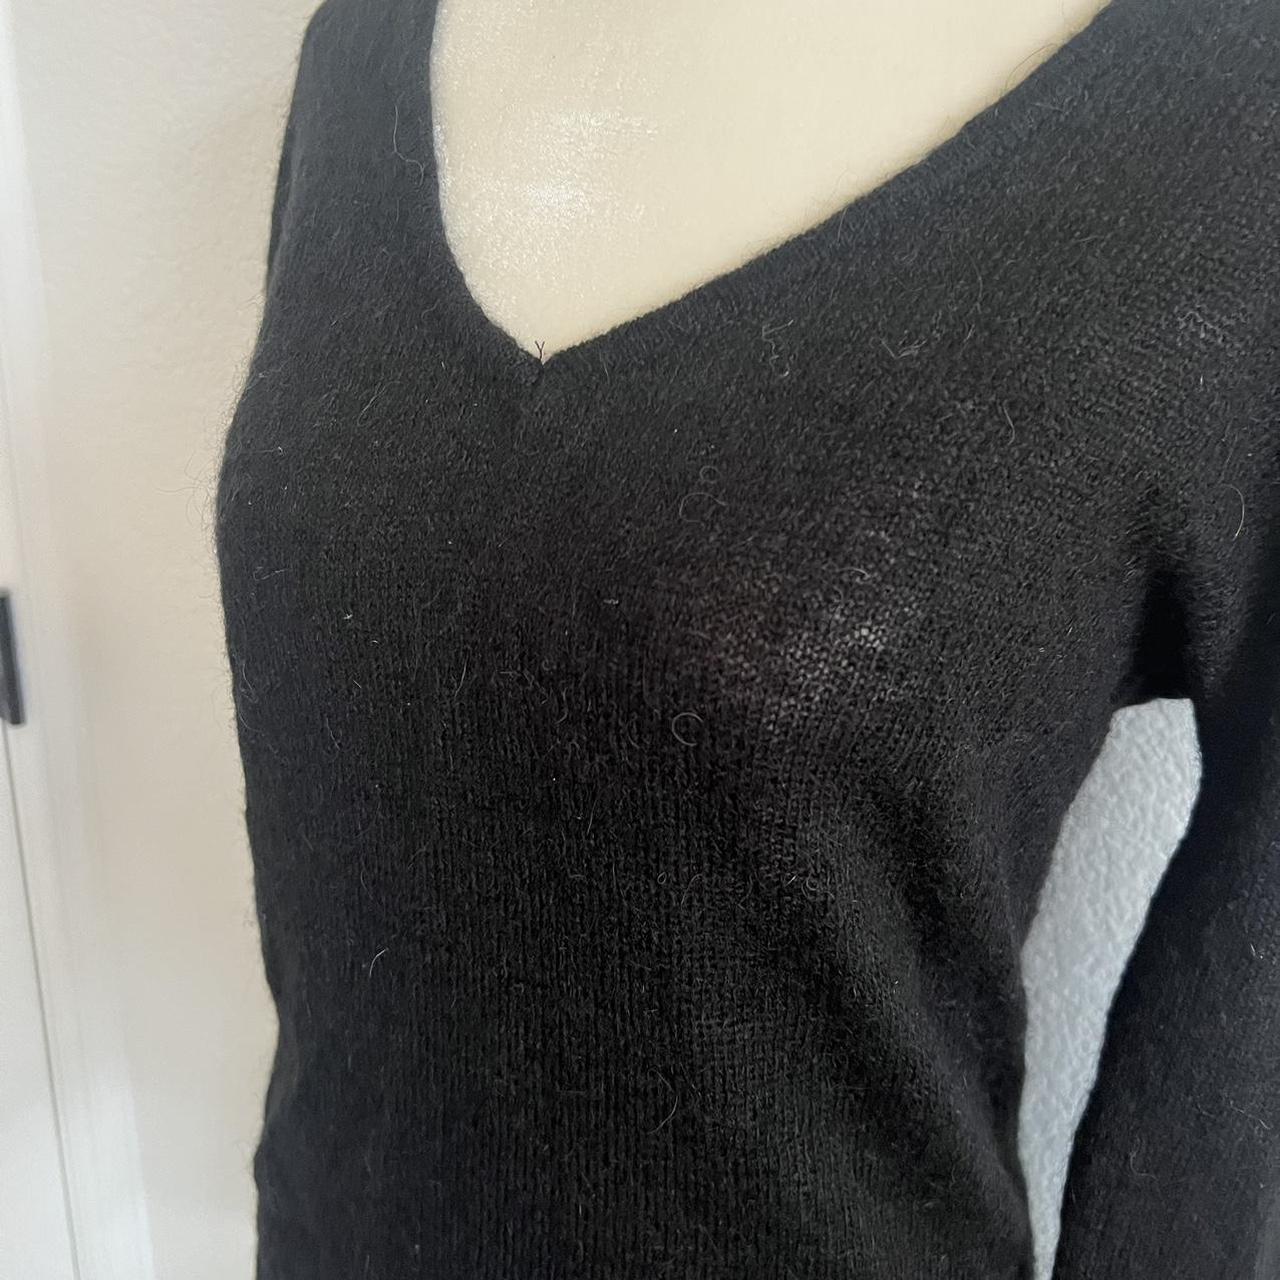 Brandy Melville Black Mohair V-Neck Sweater. One... - Depop